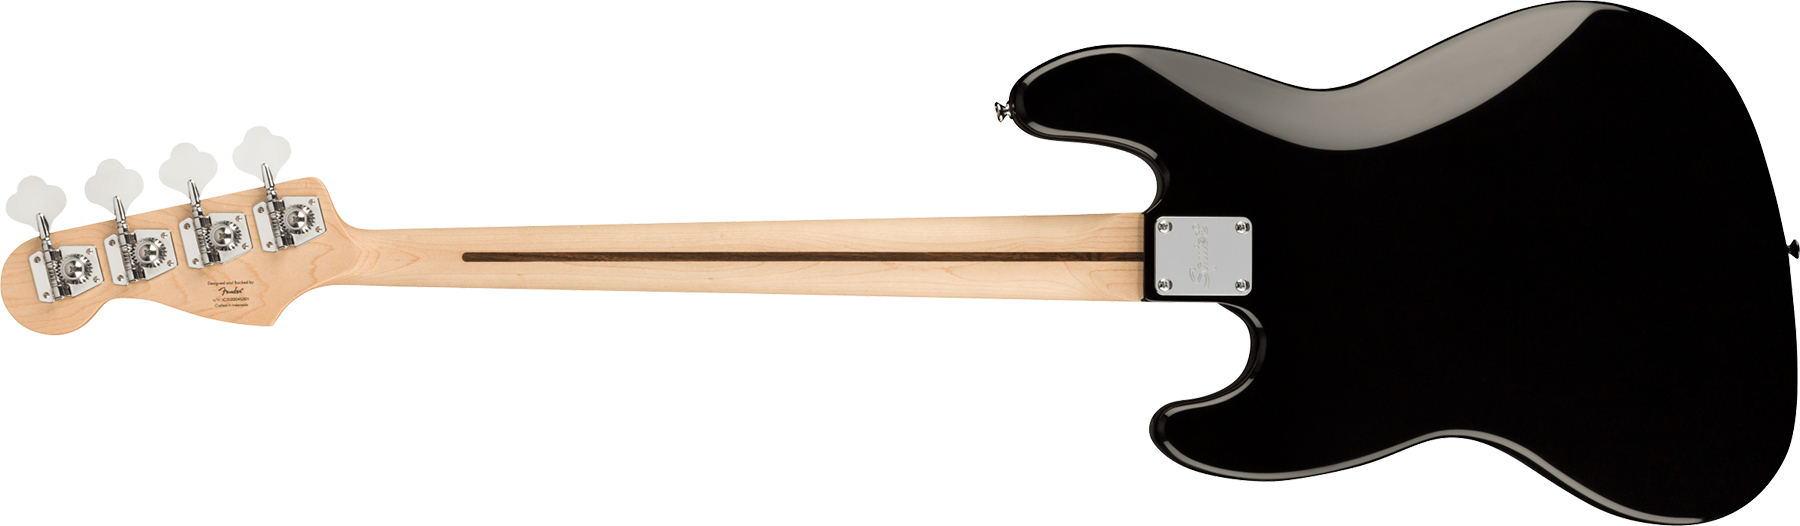 Squier Jazz Bass Affinity 2021 Mn - Black - Bajo eléctrico de cuerpo sólido - Variation 1